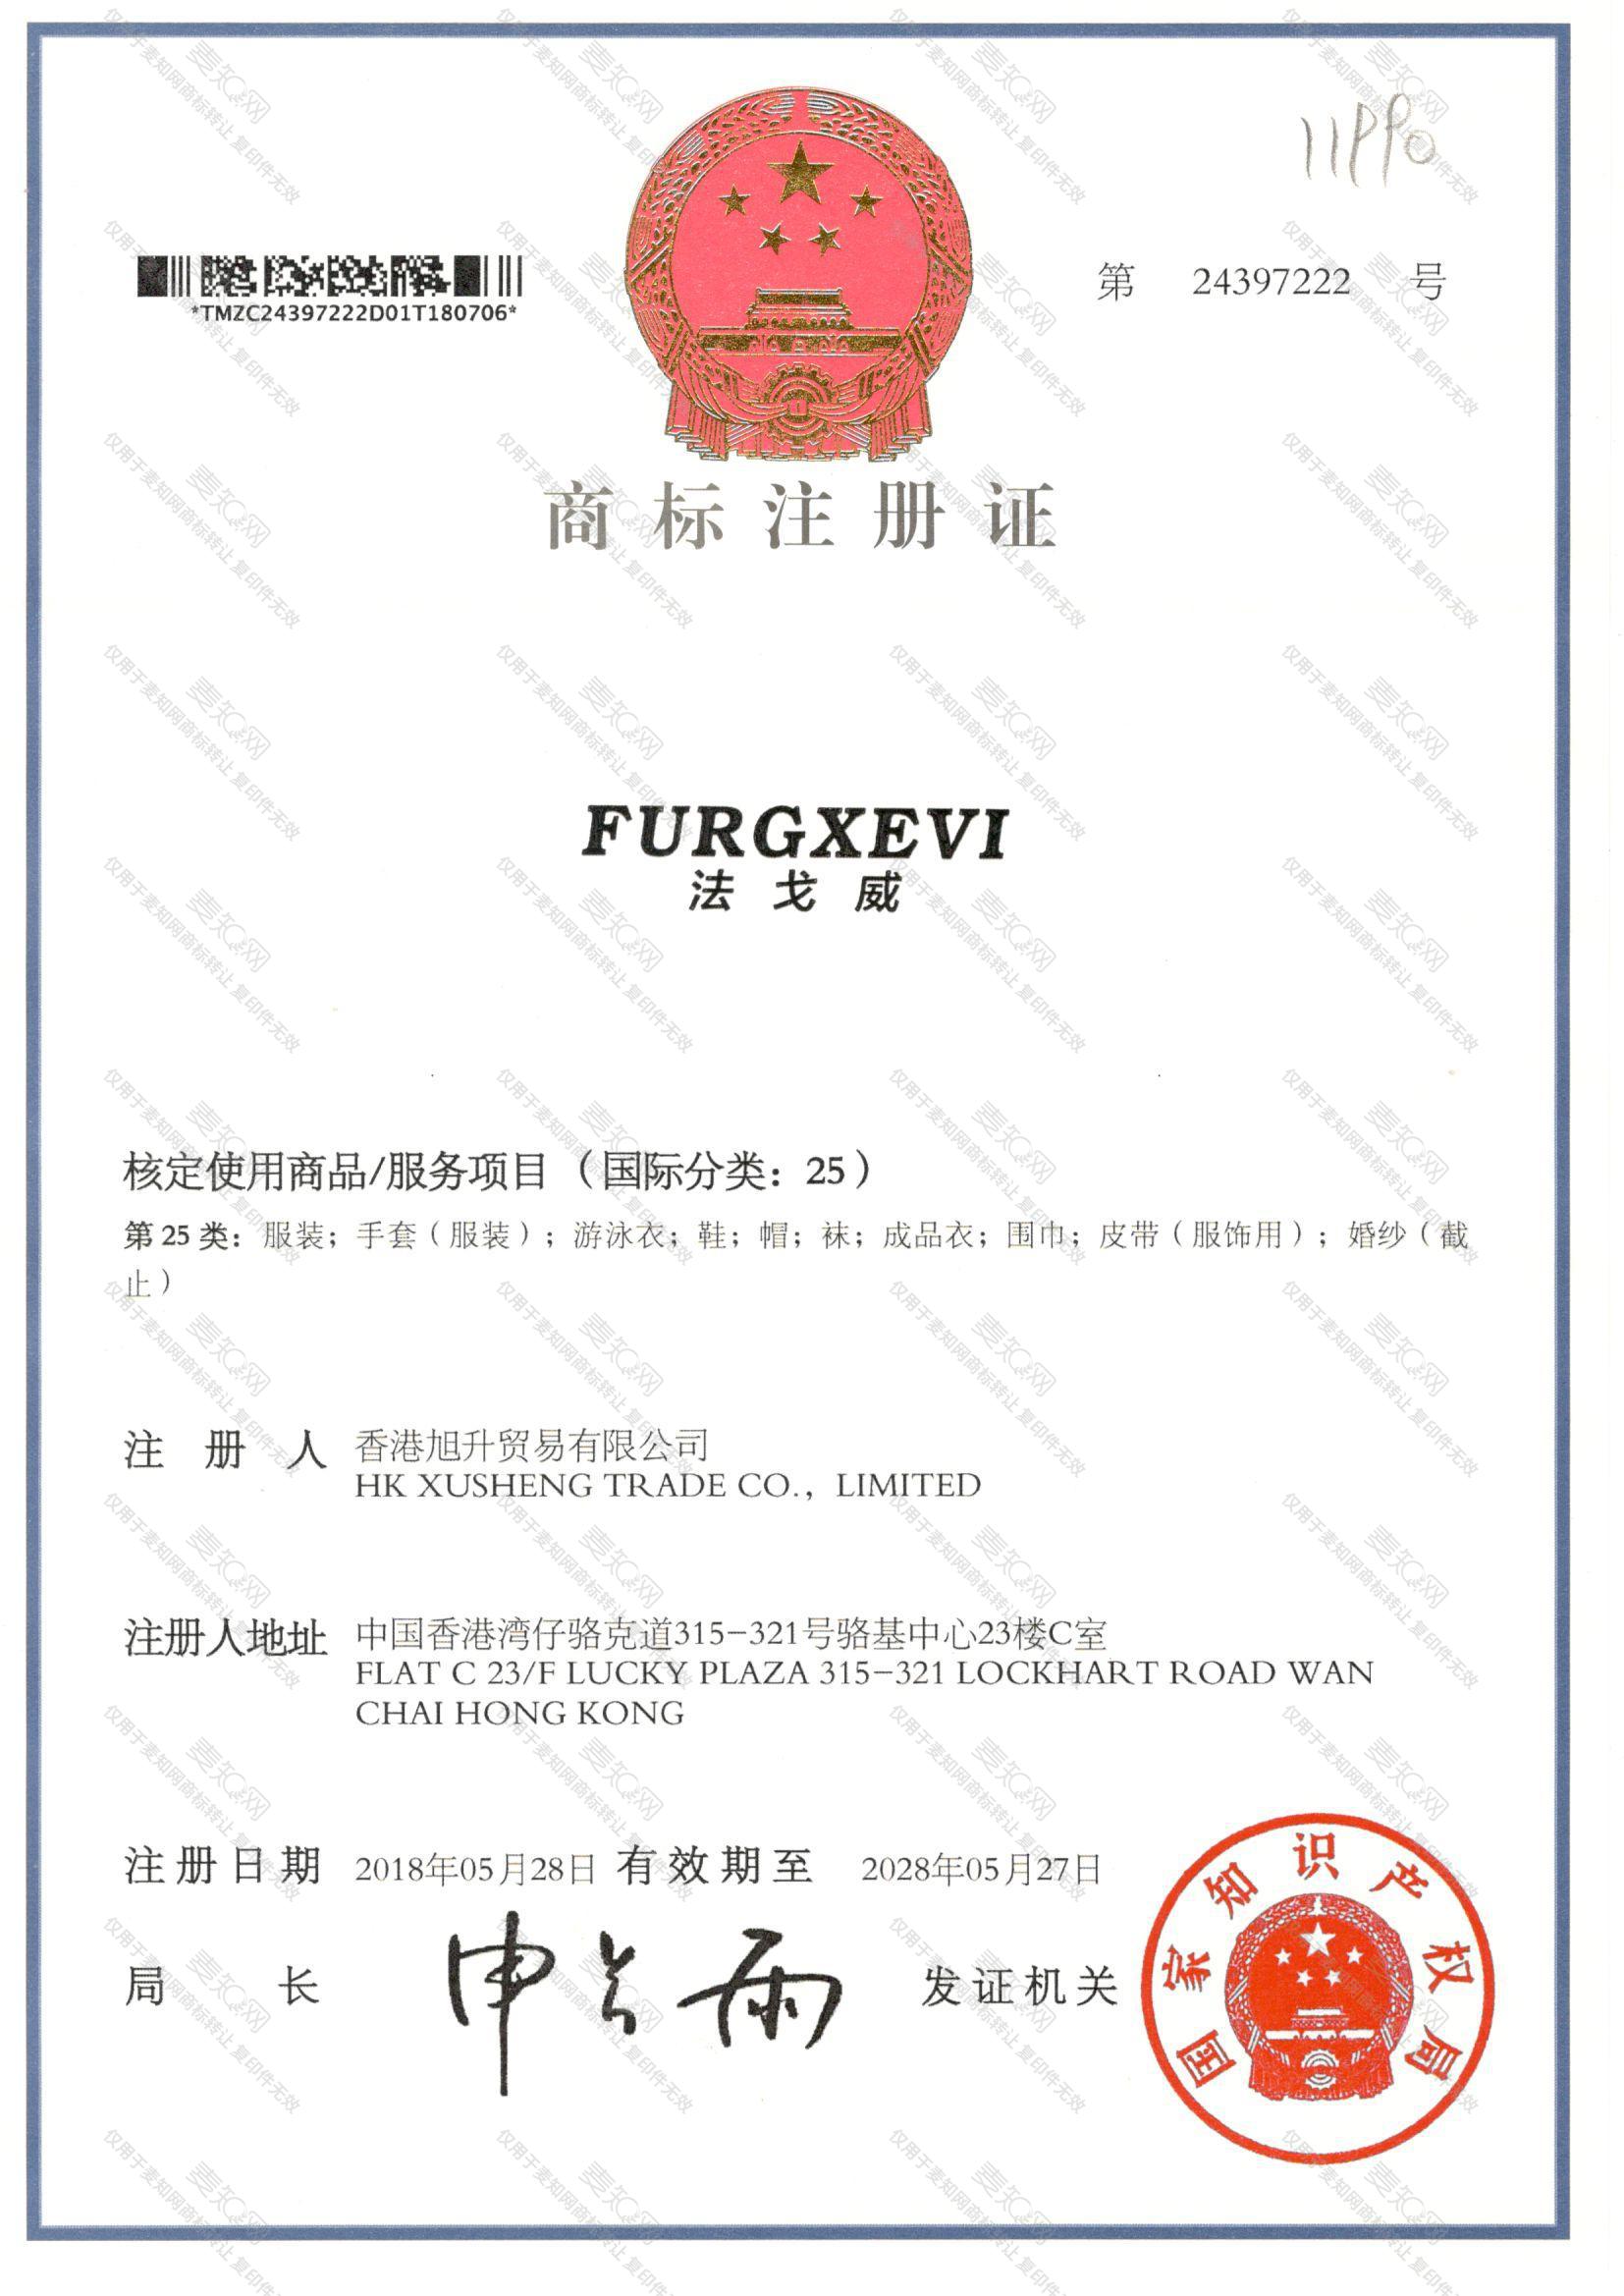 法戈威 FURGXEVI注册证